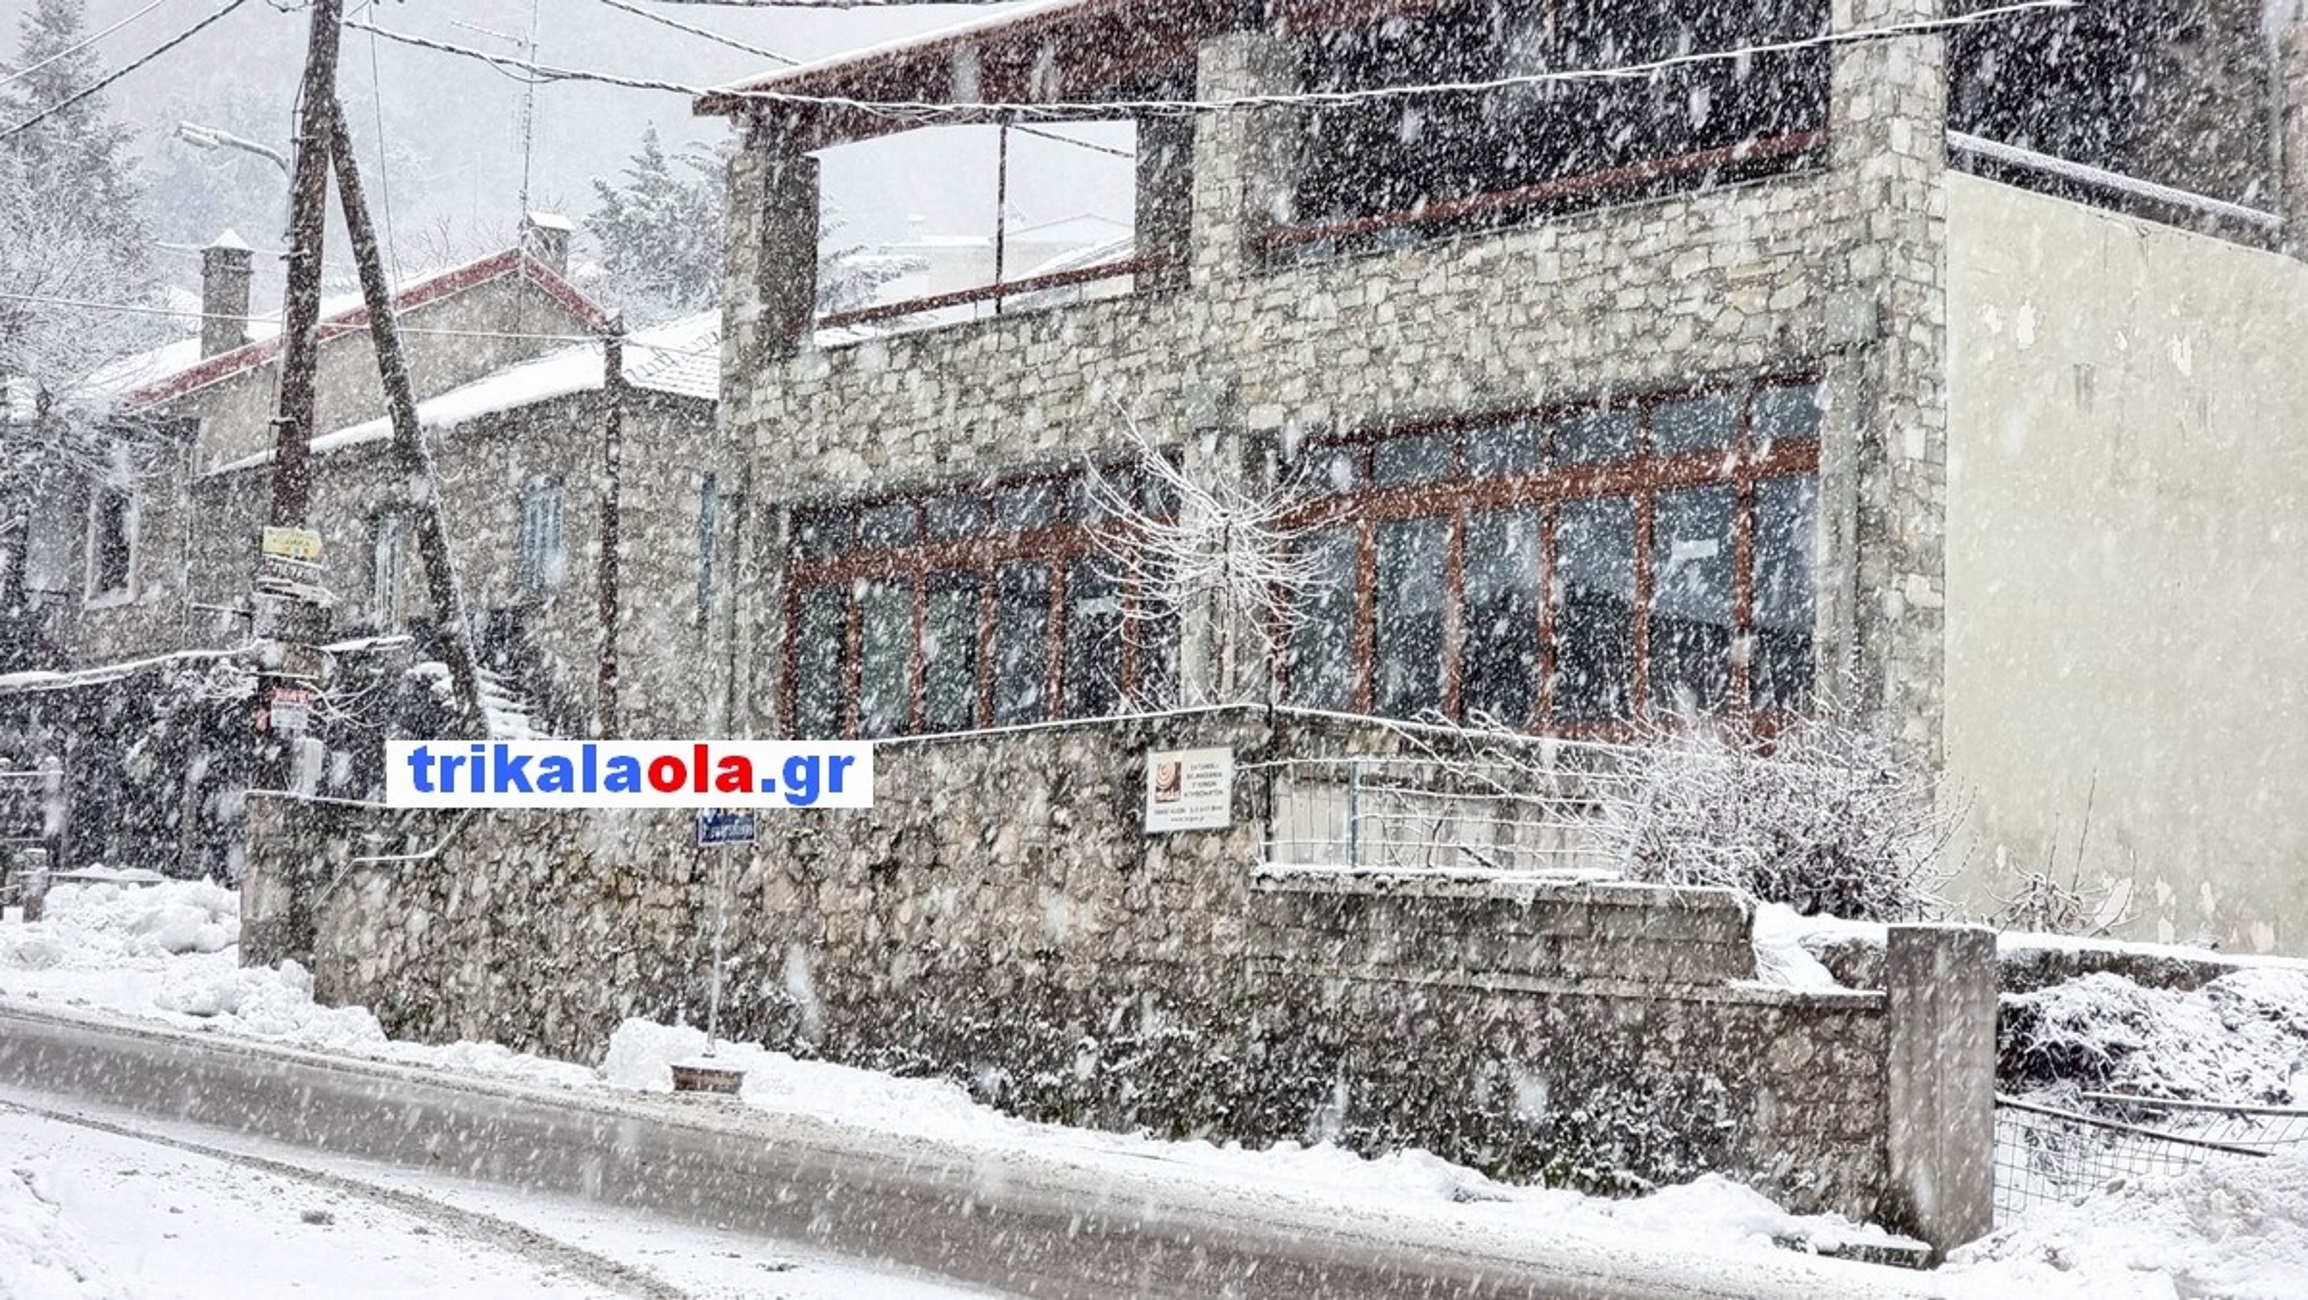 Καιρός – Τρίκαλα: Εικόνες από τη σφοδρή χιονόπτωση στην Ελάτη που μειώνει την ορατότητα